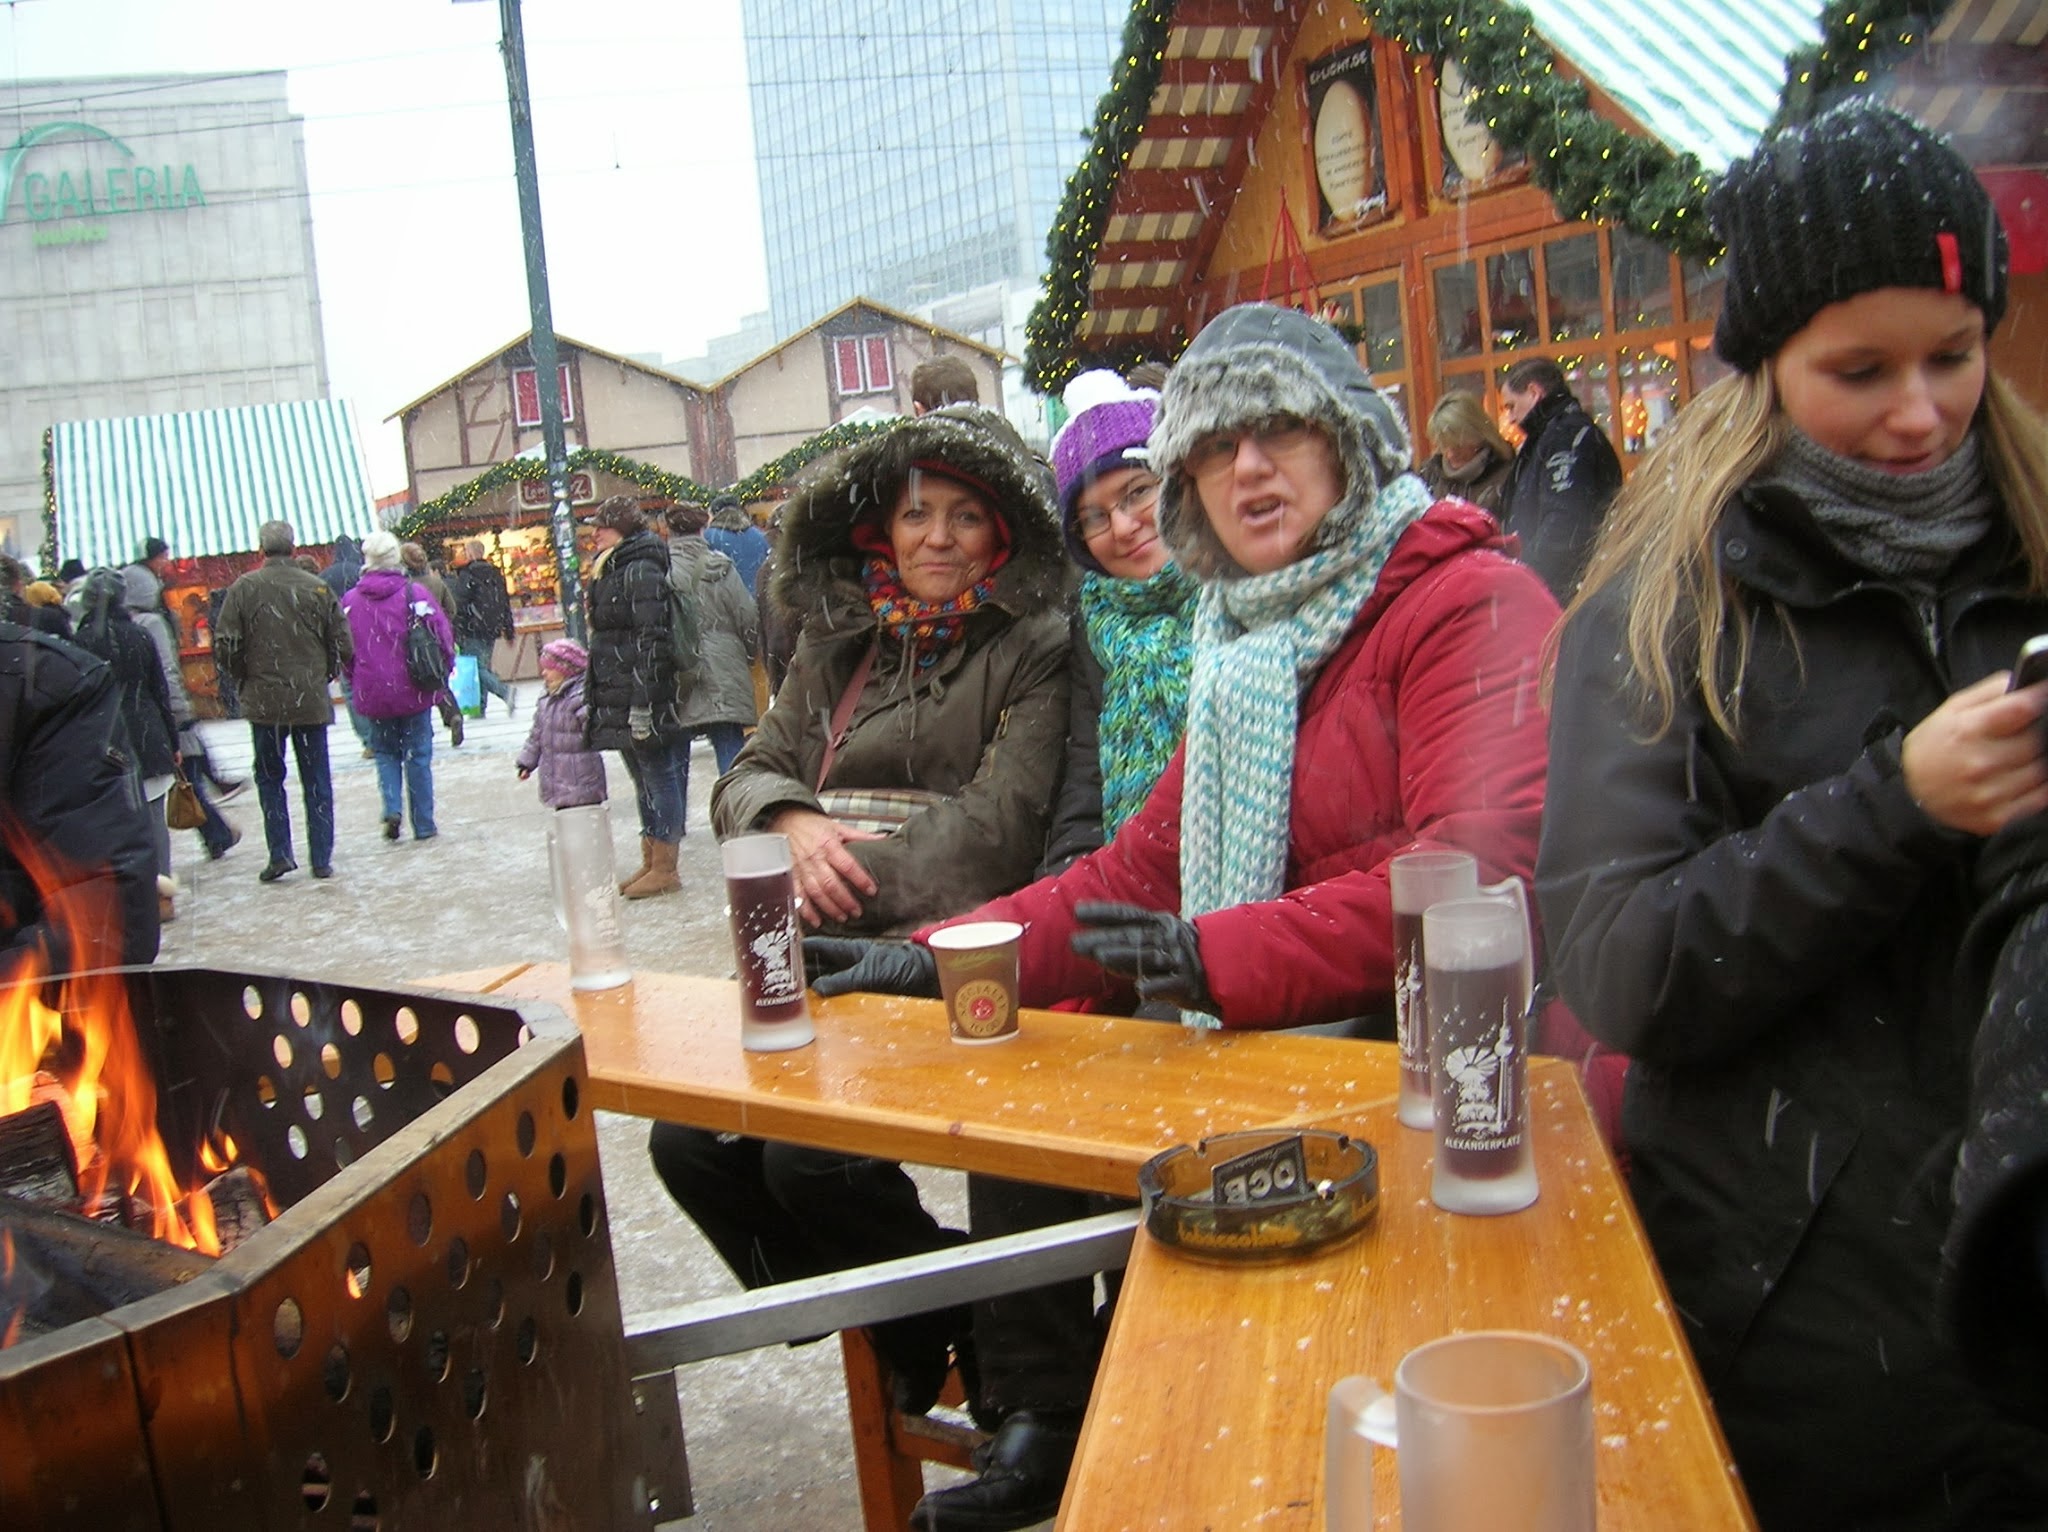 Tomando un Glühwein en Alexander Platz, Berlin, Alemania, round the world, La vuelta al mundo de Asun y Ricardo, mundoporlibre.com